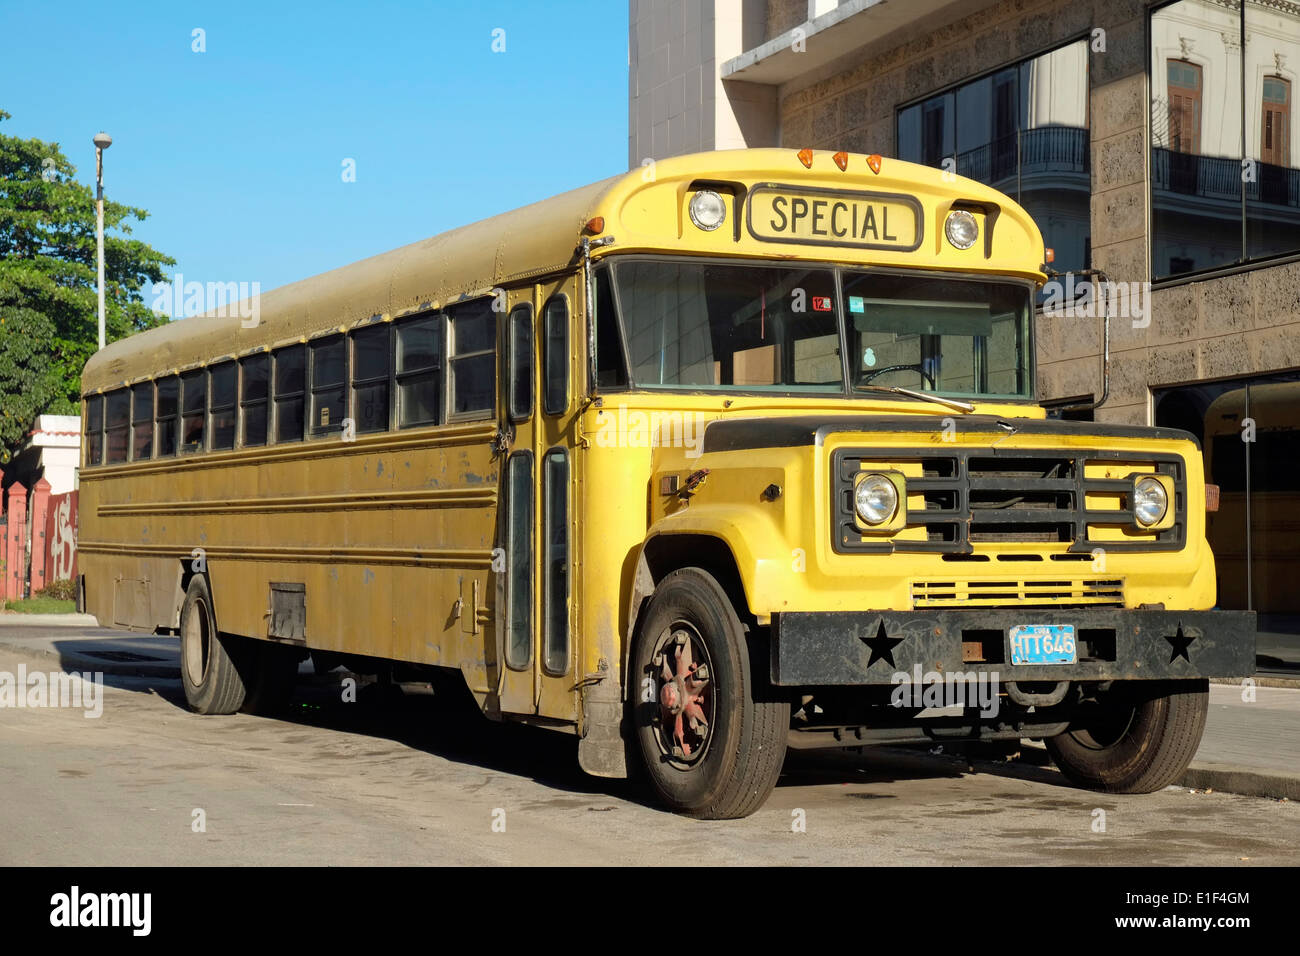 An American-style school bus in Old Havana, Cuba. Stock Photo